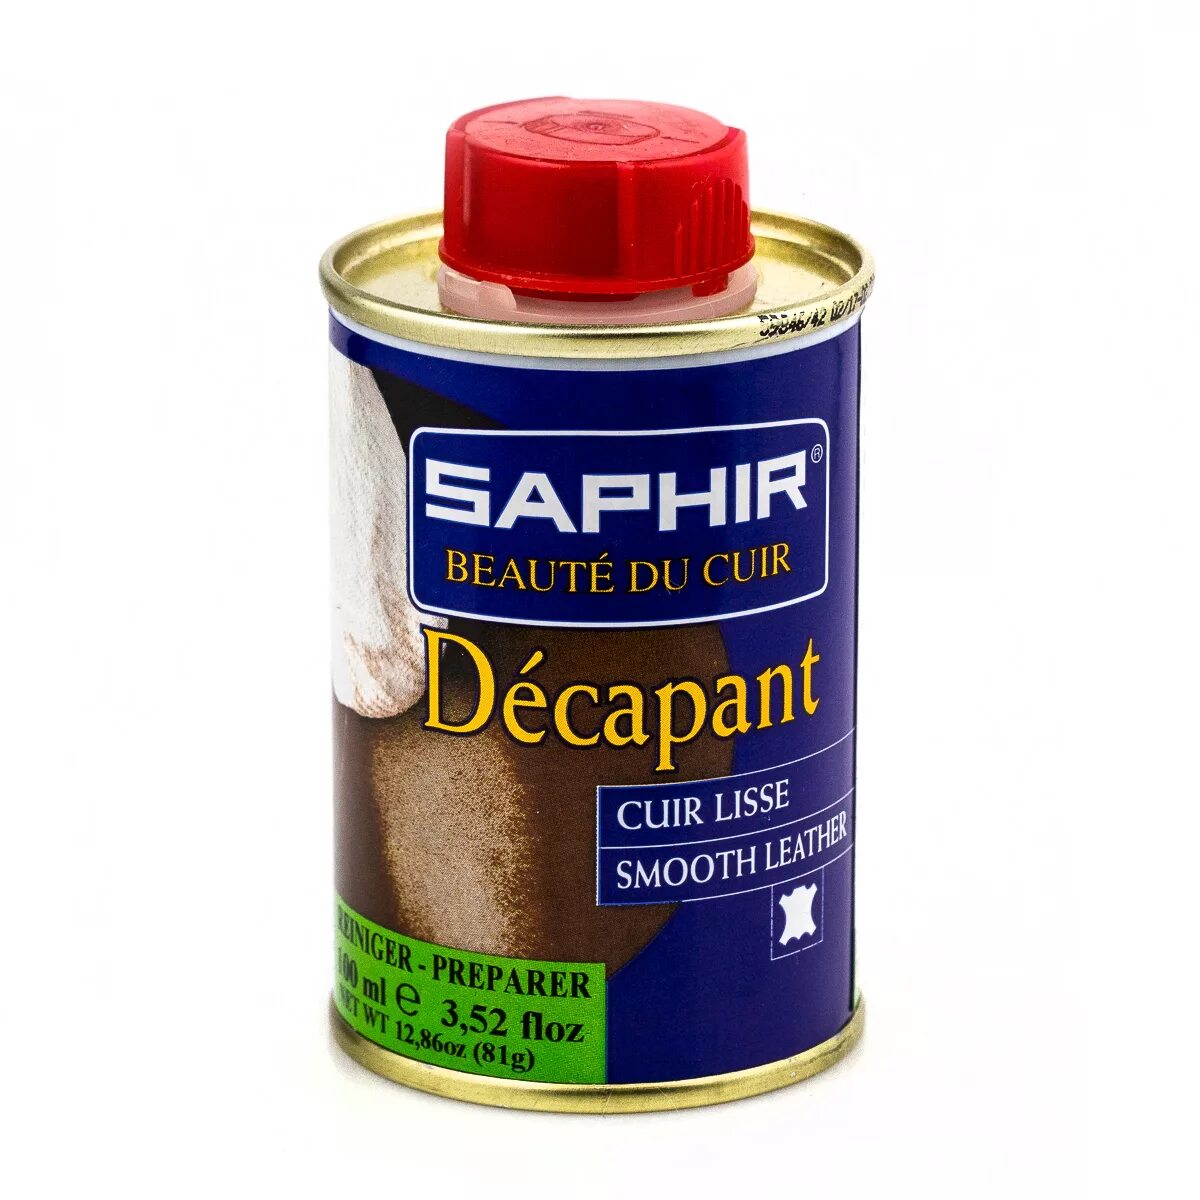 Saphir decapant. Очиститель кожи decapant. Очиститель для кожи Saphir. Сапфир очиститель для обуви. Средство сапфир